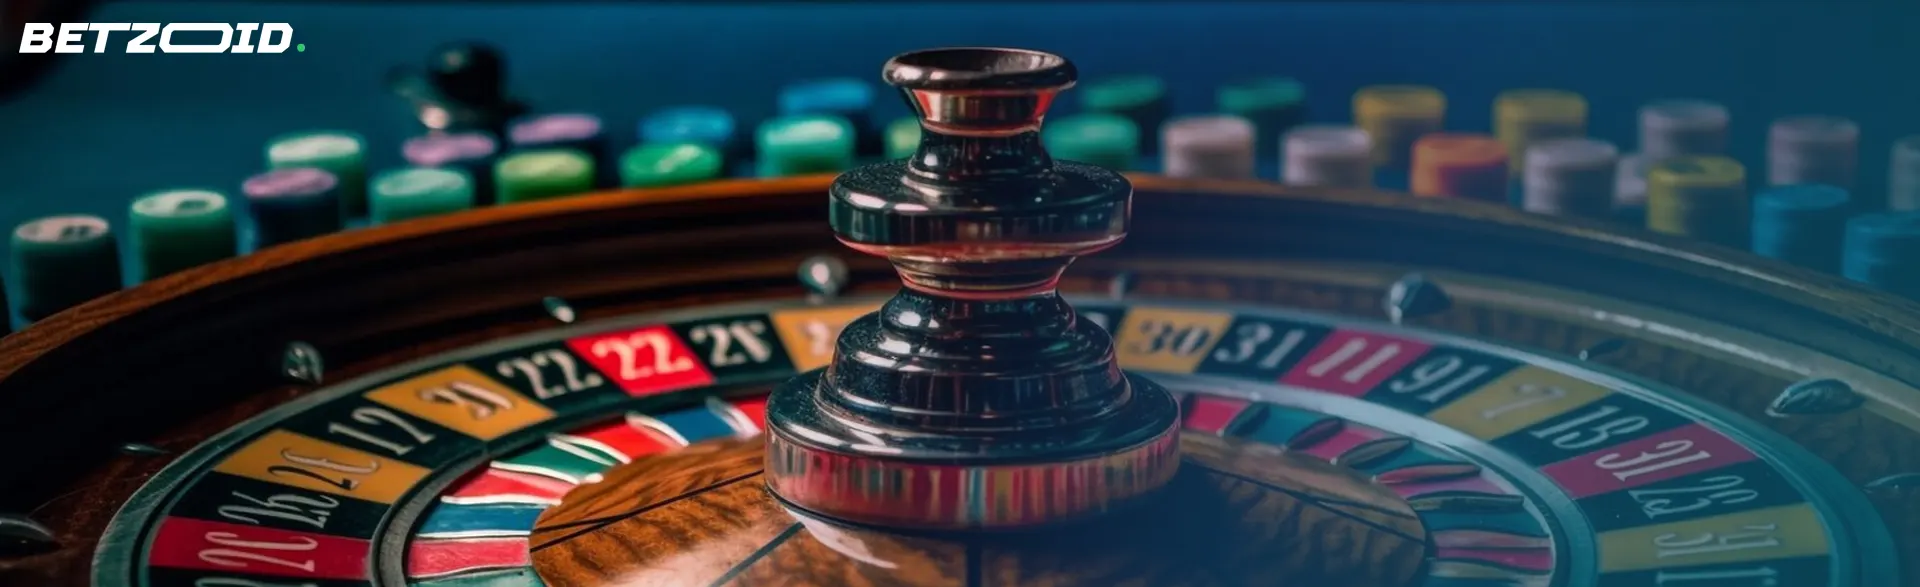 Ruleta de casino en primer plano con fichas, reflejo de una partida de casinos de ruleta en vivo.